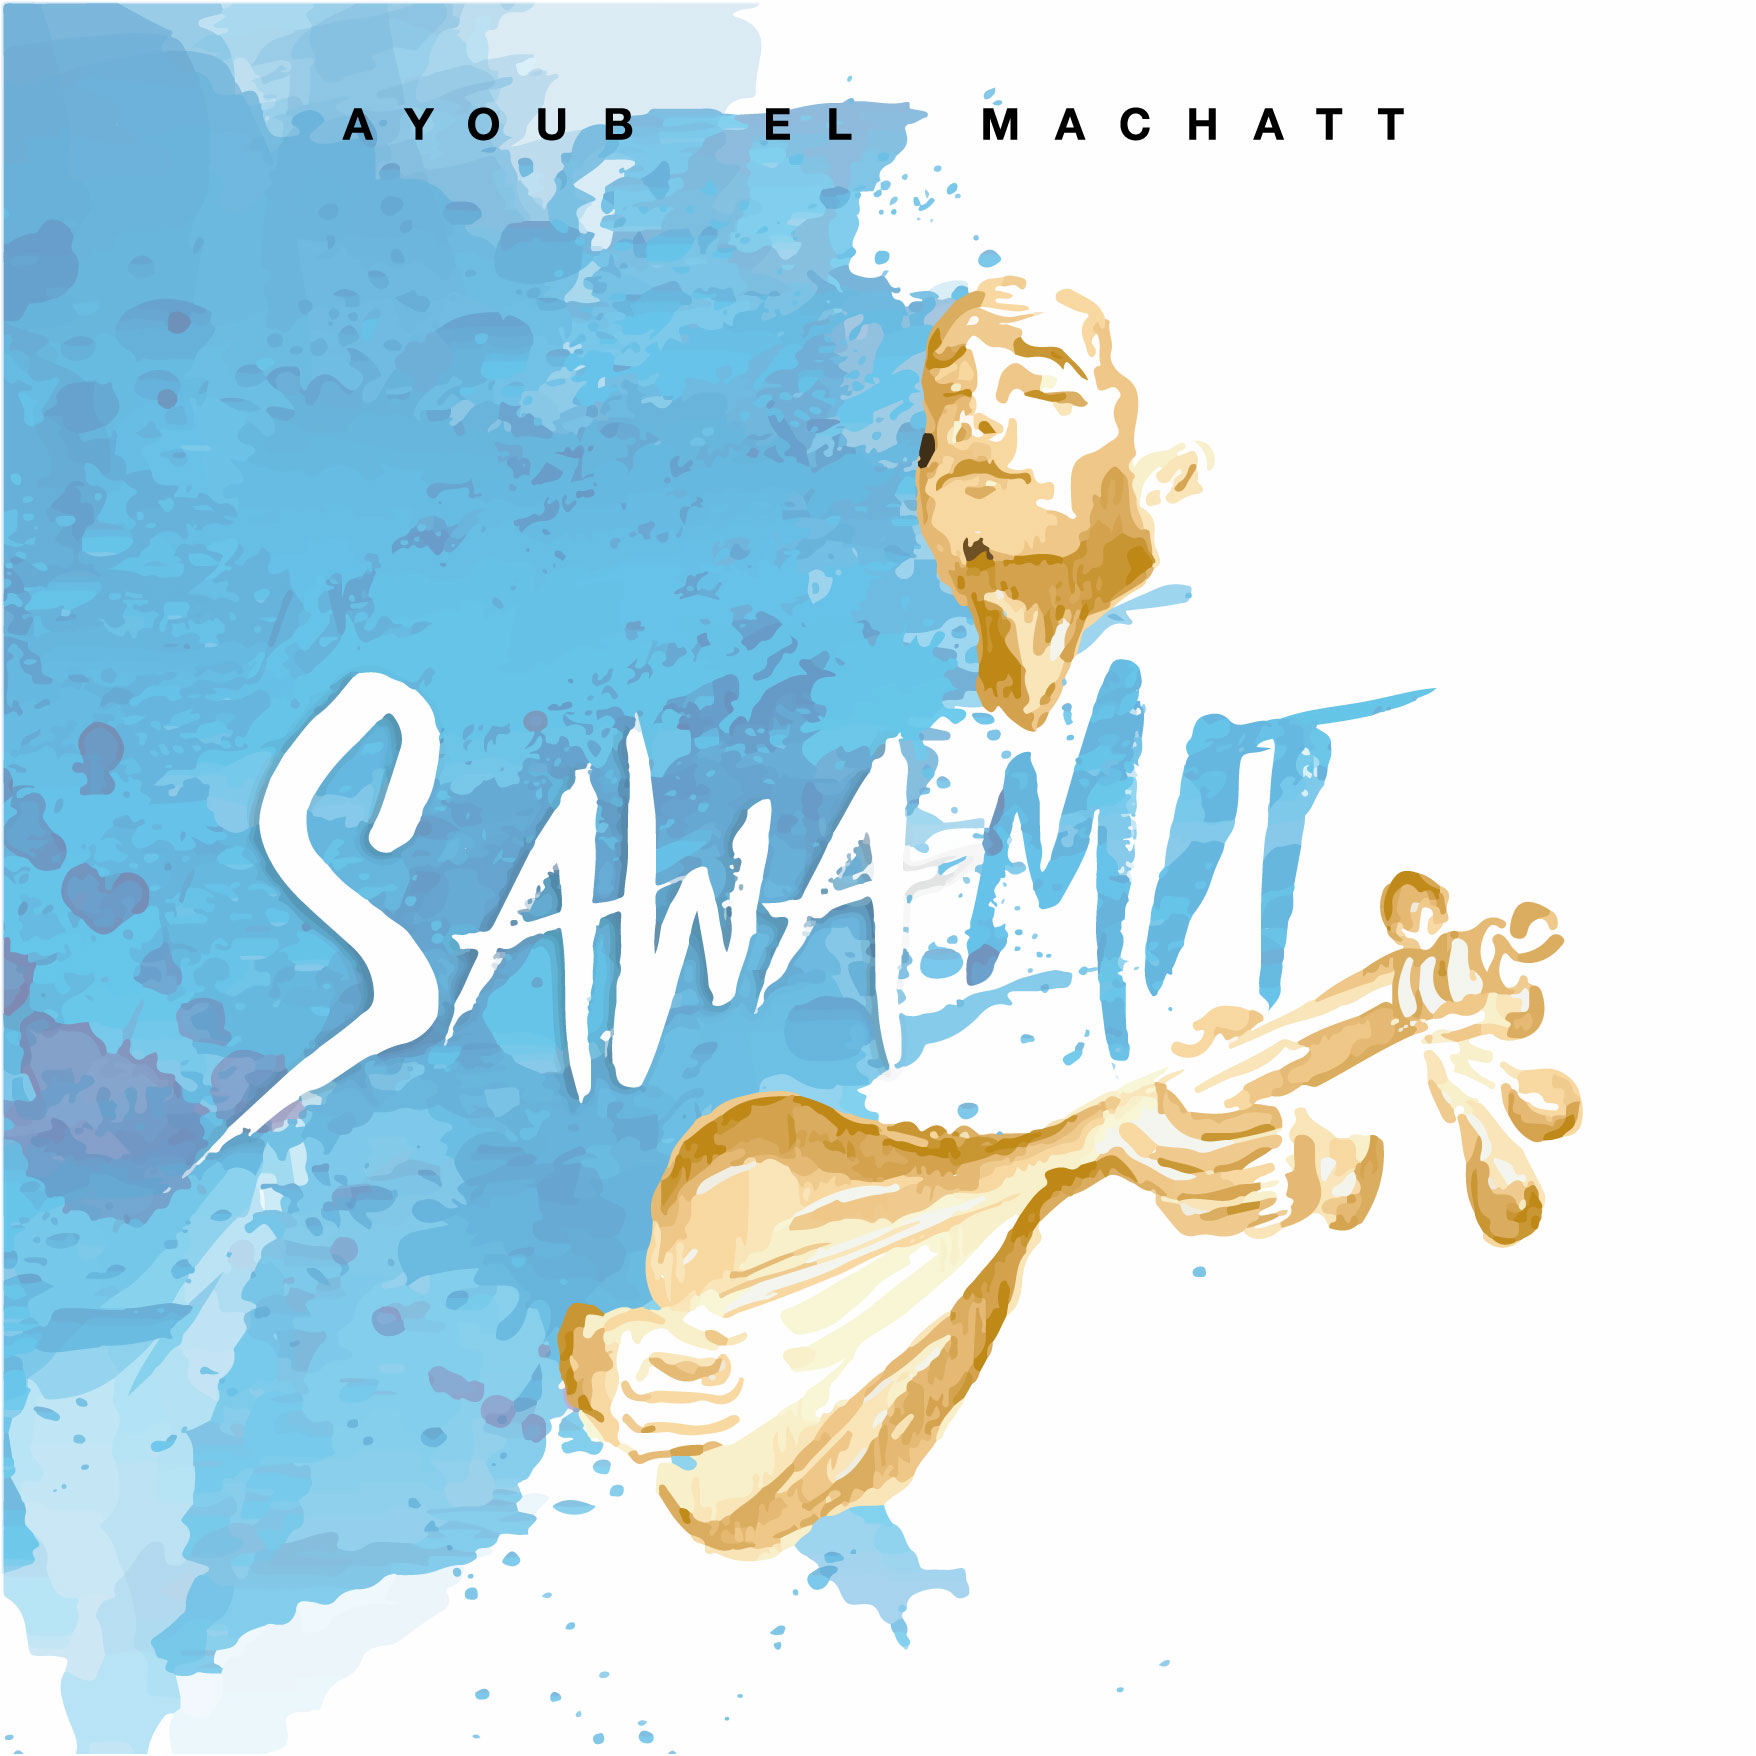 Concert SAWAMIT - Ayoub EL MACHATT - tabadoul